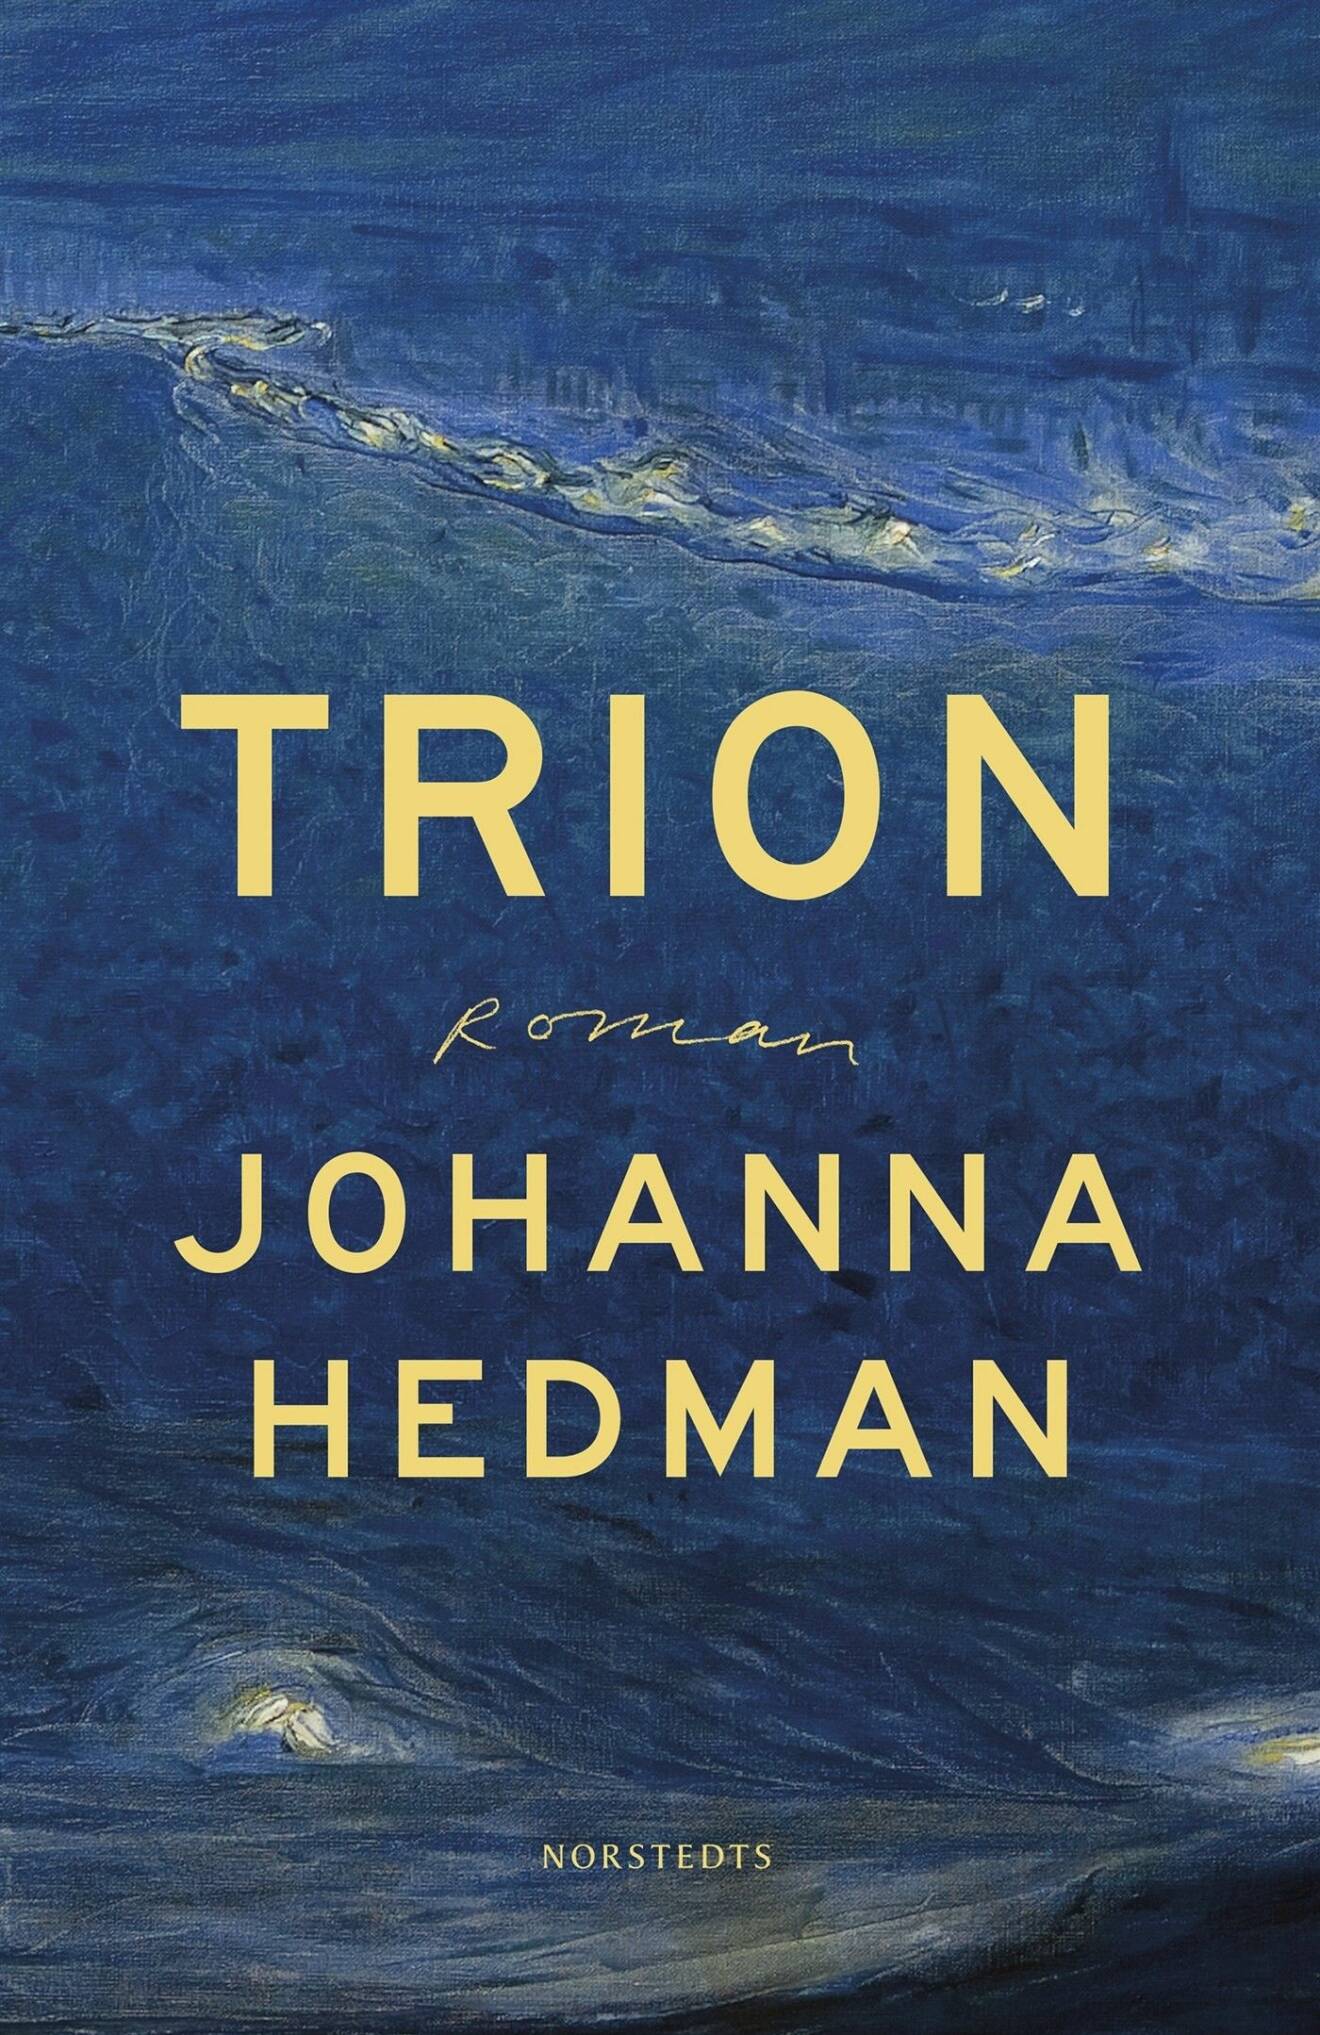 Trion, bok av Johanna Hedman.